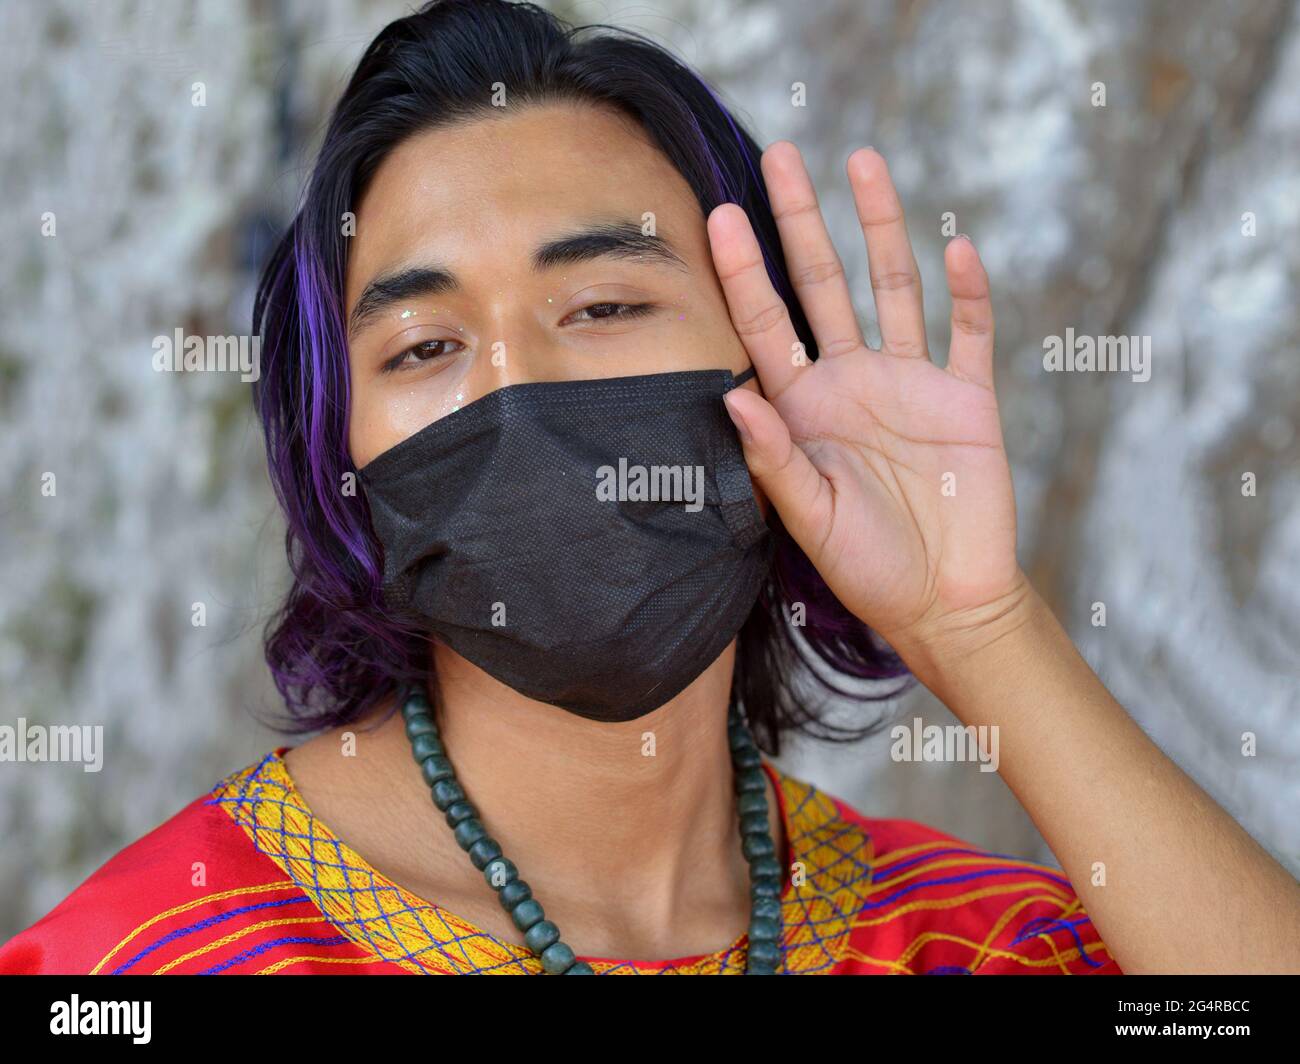 Un jeune mexicain charmant, avec une traînée de cheveux bleu violet teint, porte un masque noir pendant la pandémie mondiale du coronavirus et regarde la caméra. Banque D'Images